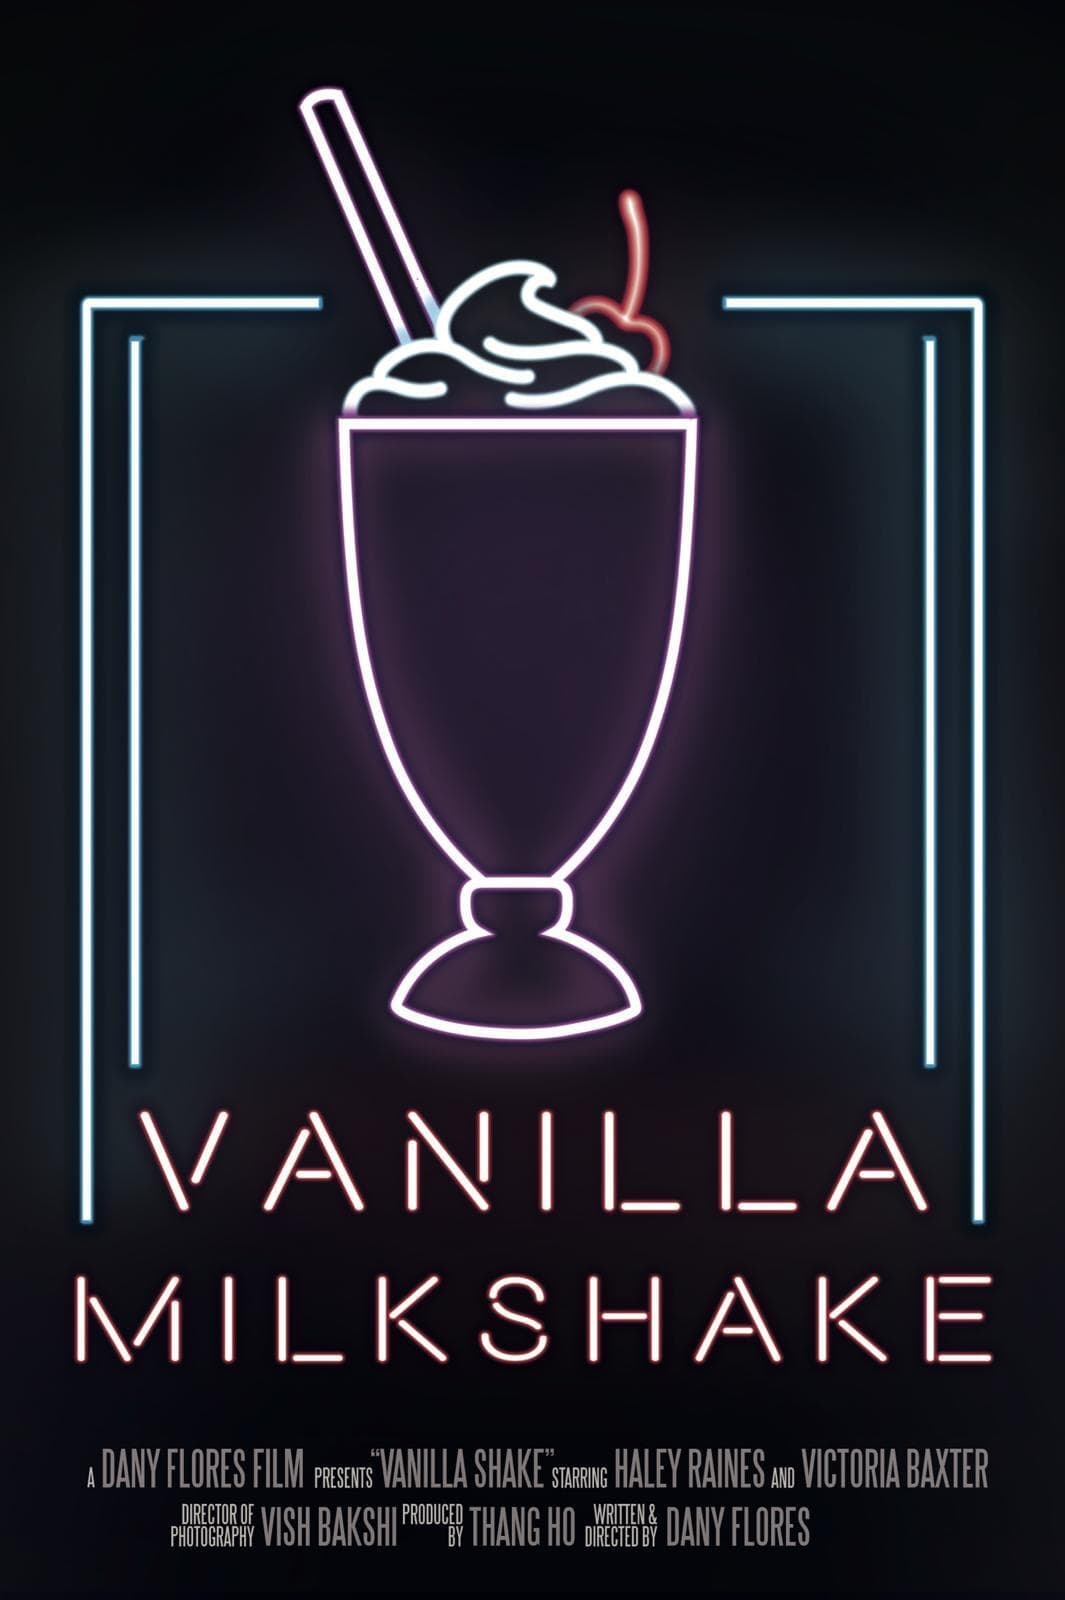 Vanilla Milkshake